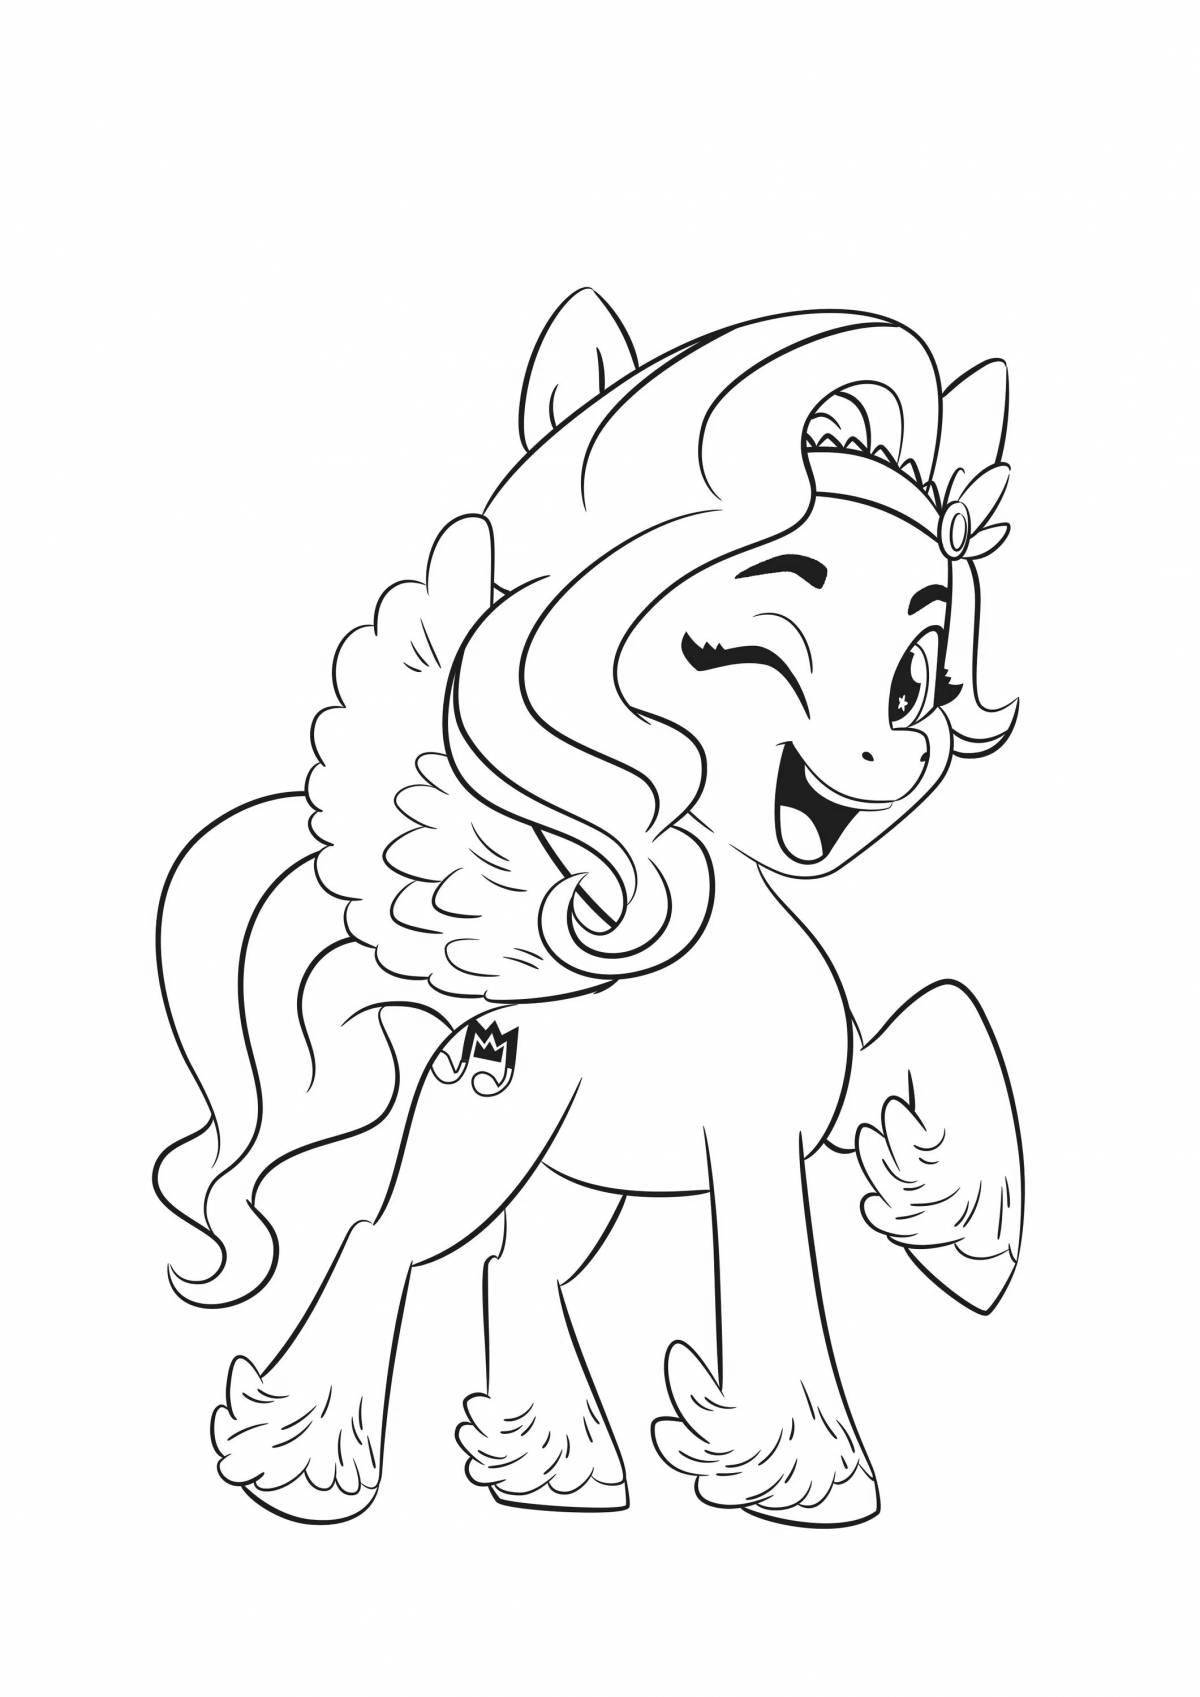 Happy cartoon pony coloring